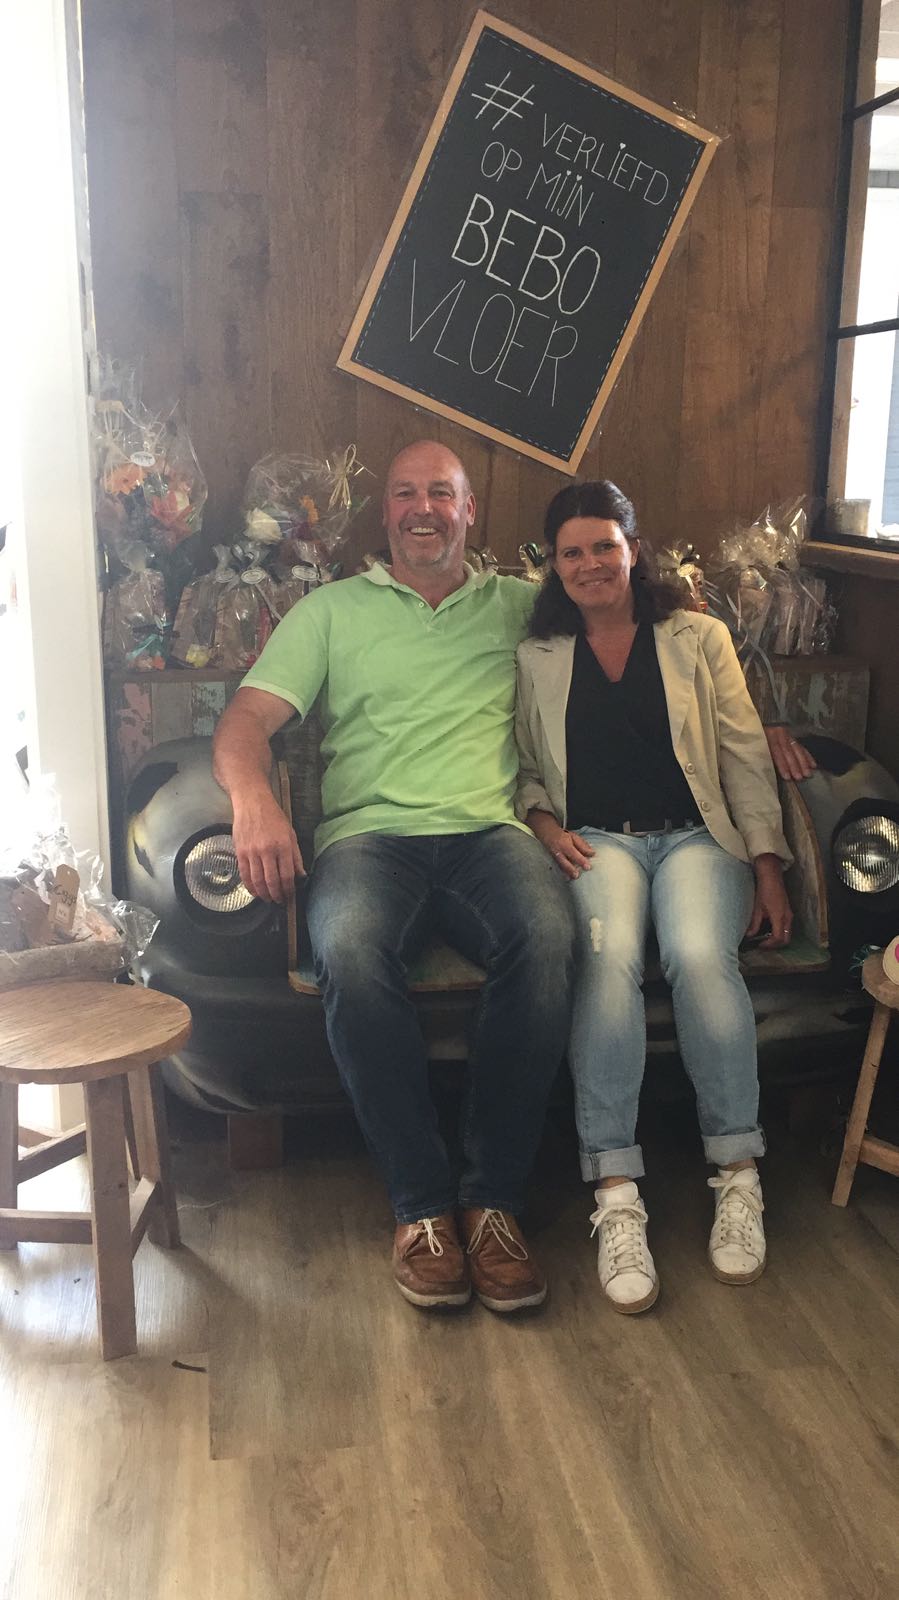 Meneer en mevrouw Ten Broeke zijn geweldig blij met hun prachtige nieuwe tafel, stoelen en 2 nieuwe hanglampen! Veel plezier ervan!